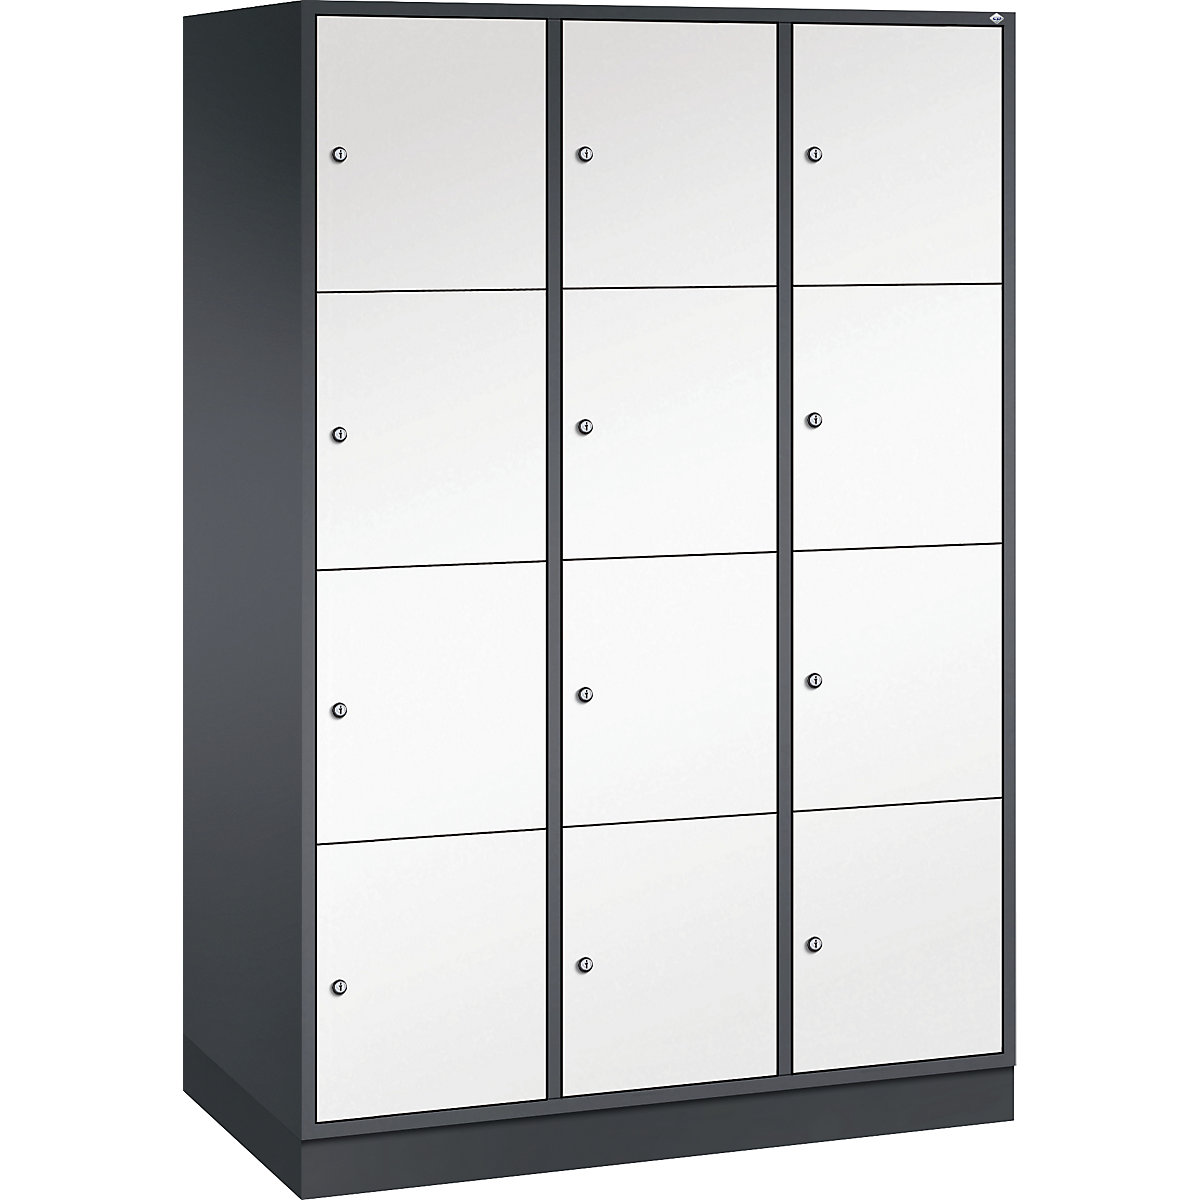 Vestiaire multicases en acier INTRO, casiers hauteur 435 mm – C+P, l x p 1220 x 600 mm, 12 casiers, corps gris noir, portes blanc pur-3